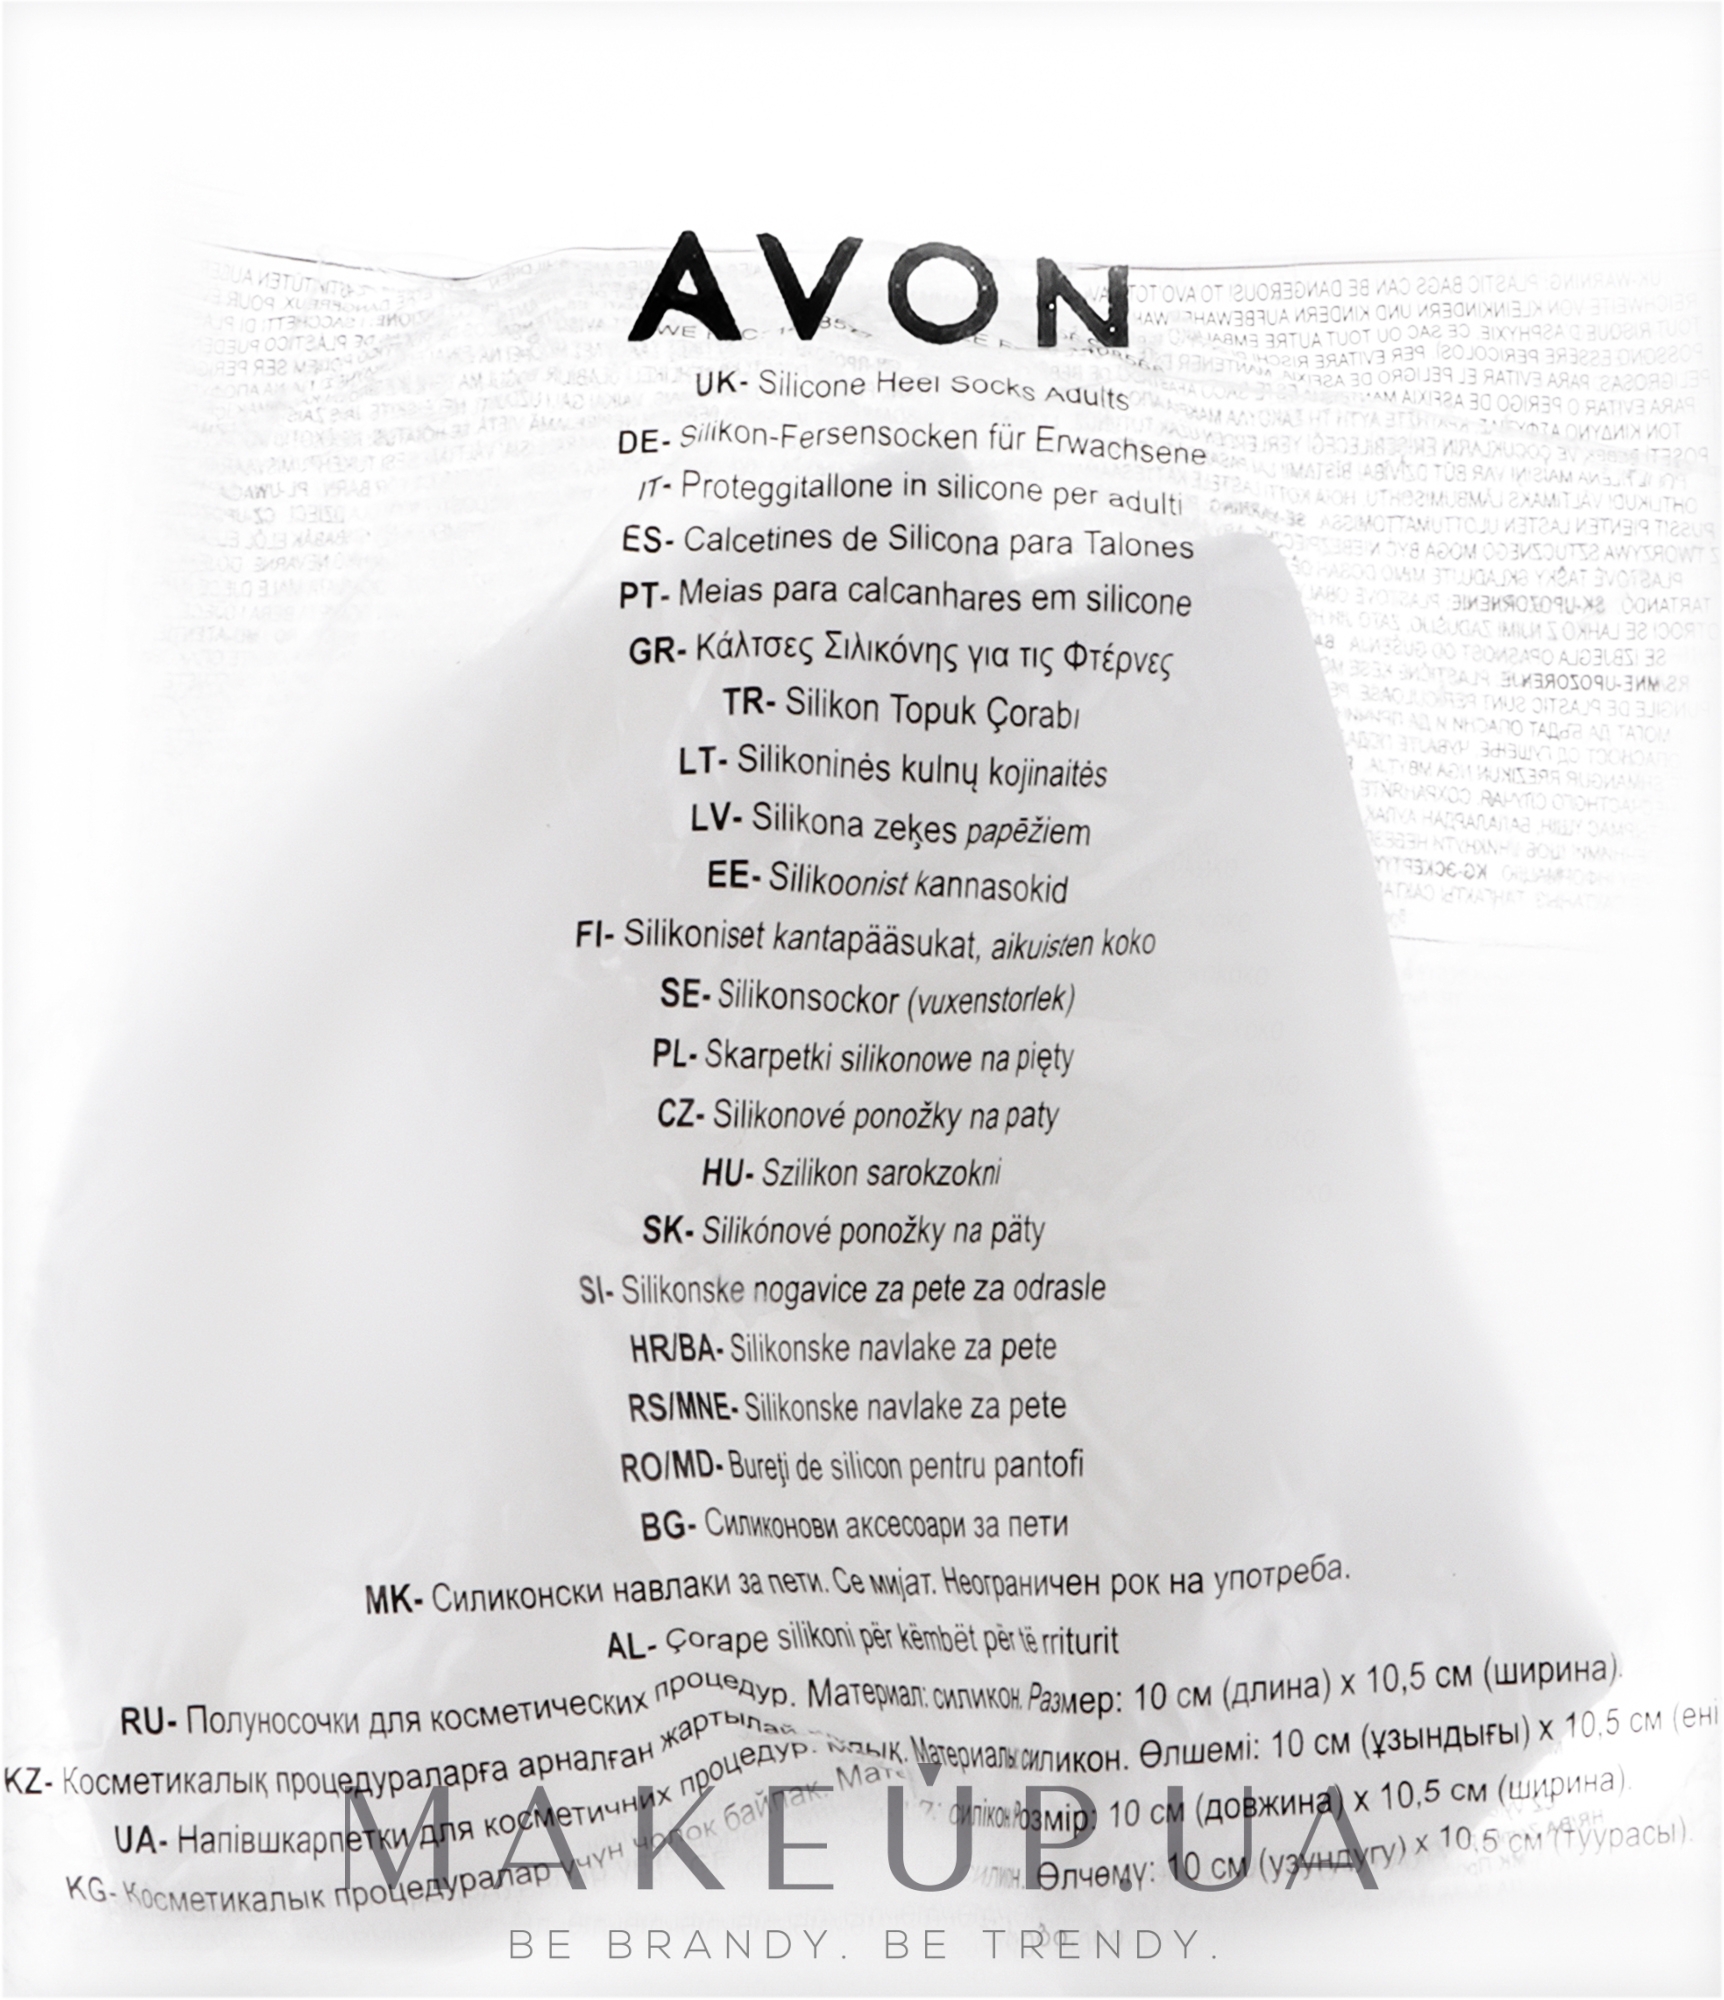 Полуноски для косметических процедур - Avon — фото 2шт